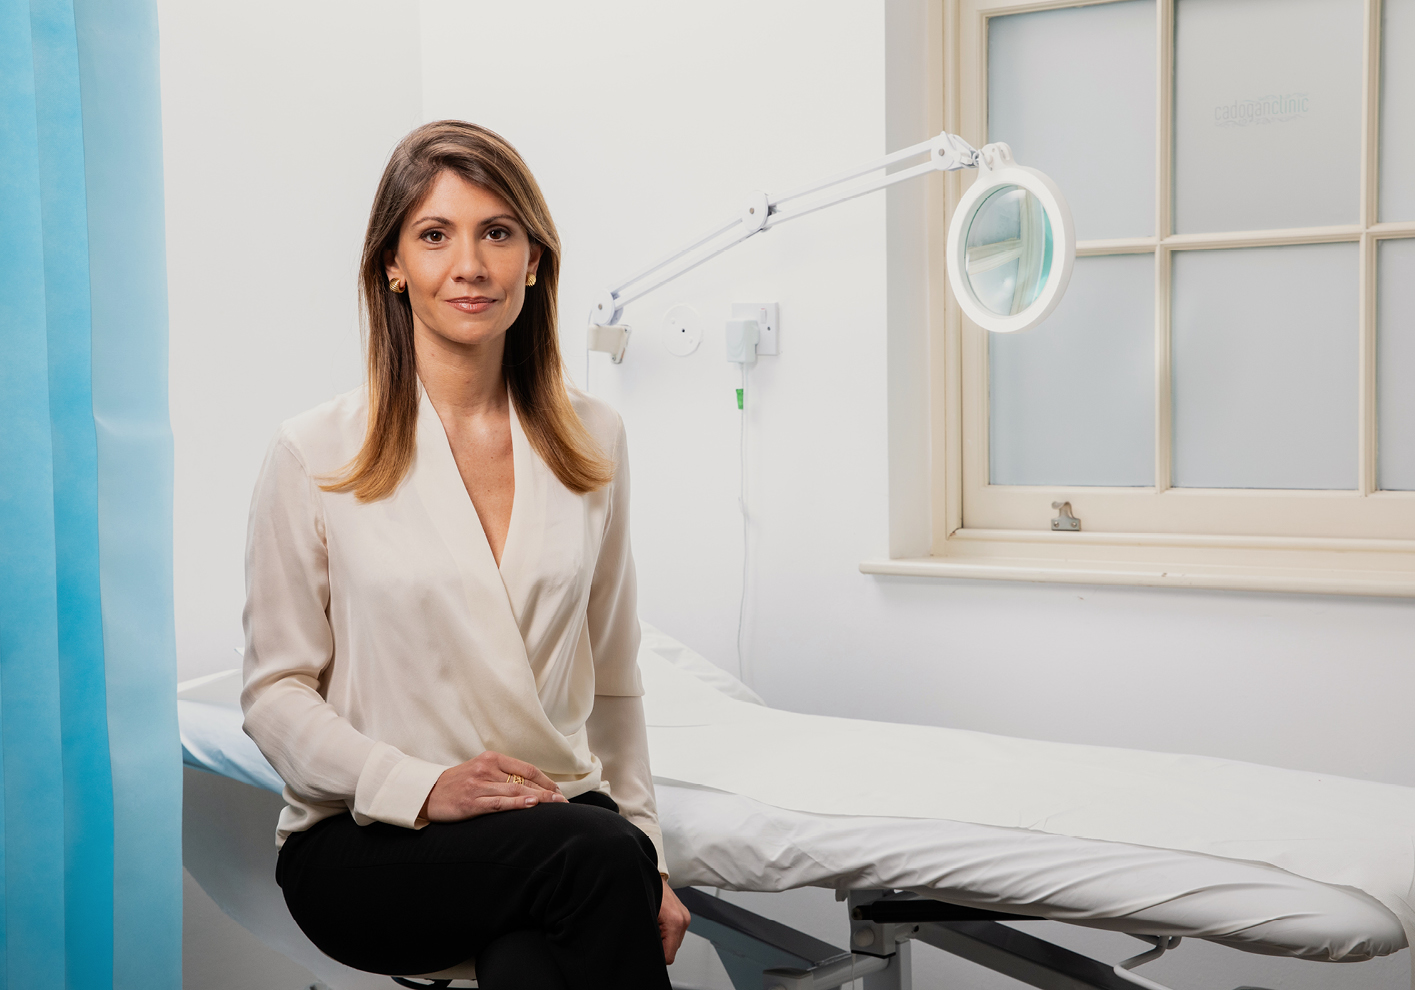 Aurora Almadori, consultant plastic surgeon at Cadogan Clinic